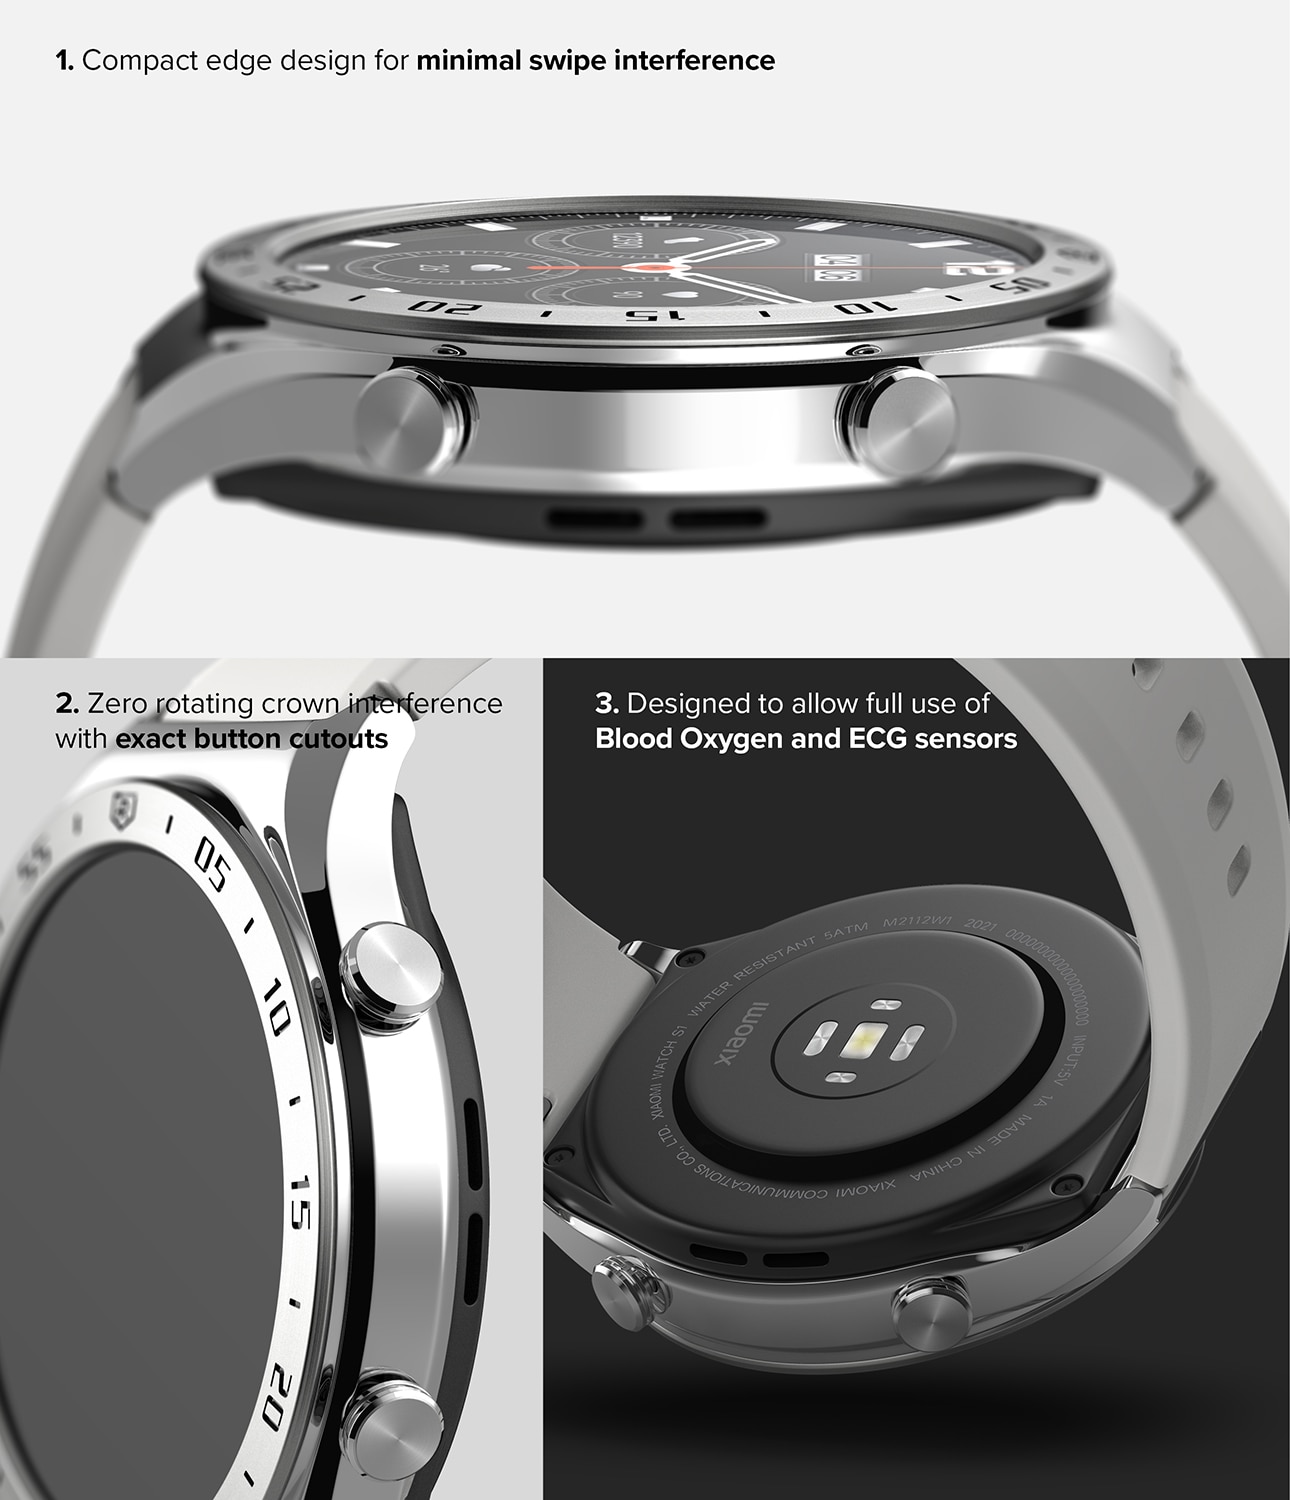 Bezel Styling Xiaomi Watch S1 Zilver